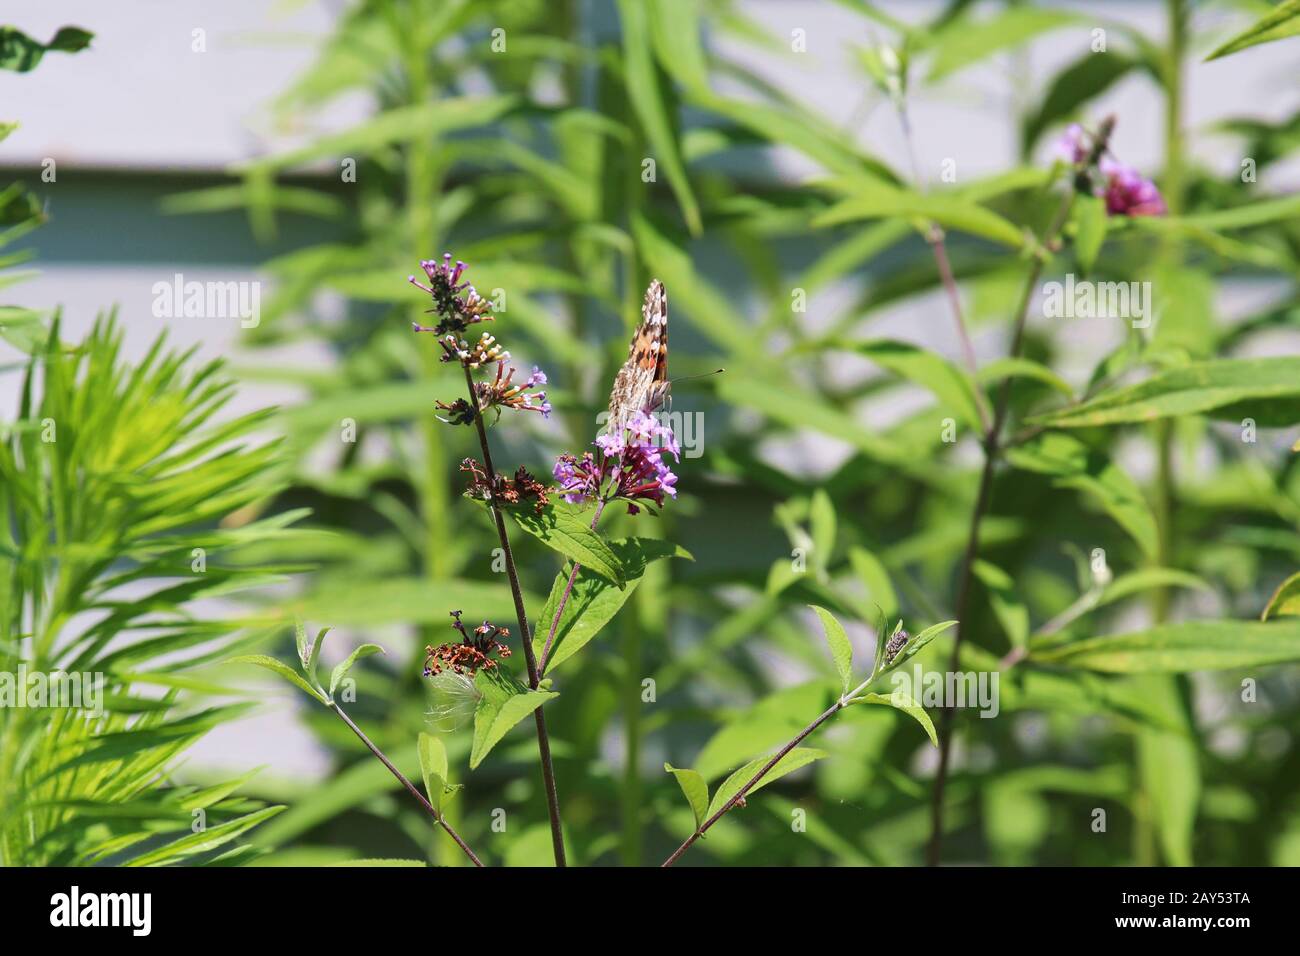 Un fronte in avanti Dipinto Lady Butterfly con le ali chiuse sorseggiando nettare da fiori viola di una pianta di alghe Swamp Milkweed estate in Wisconsin, Stati Uniti Foto Stock